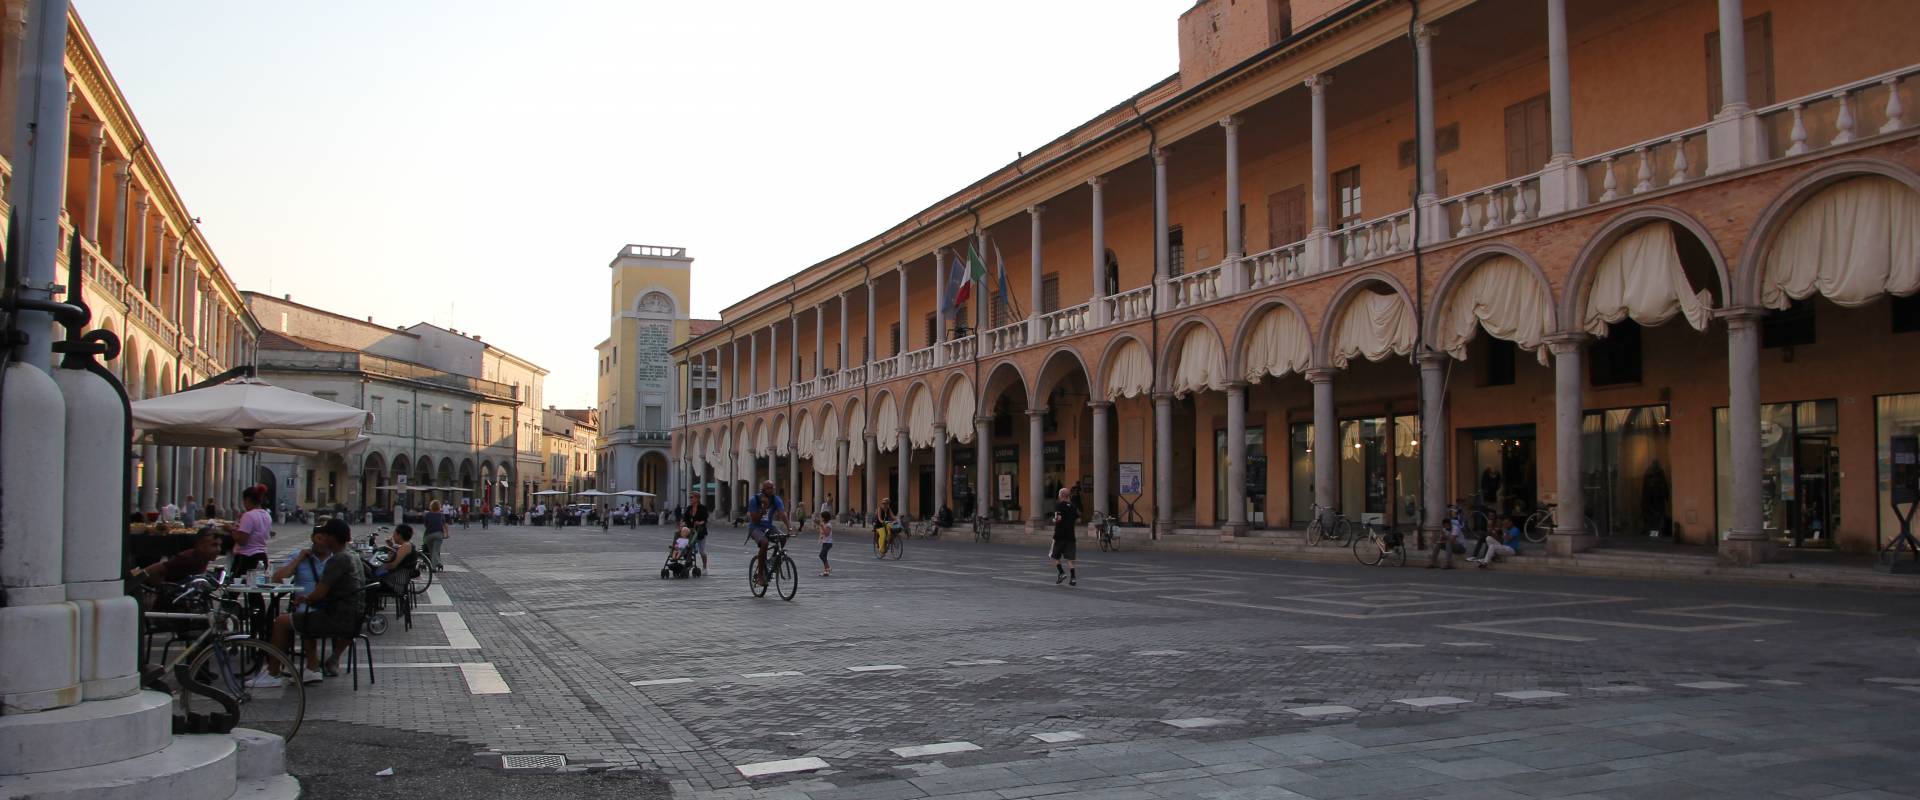 Faenza, piazza del Popolo (03) foto di Gianni Careddu